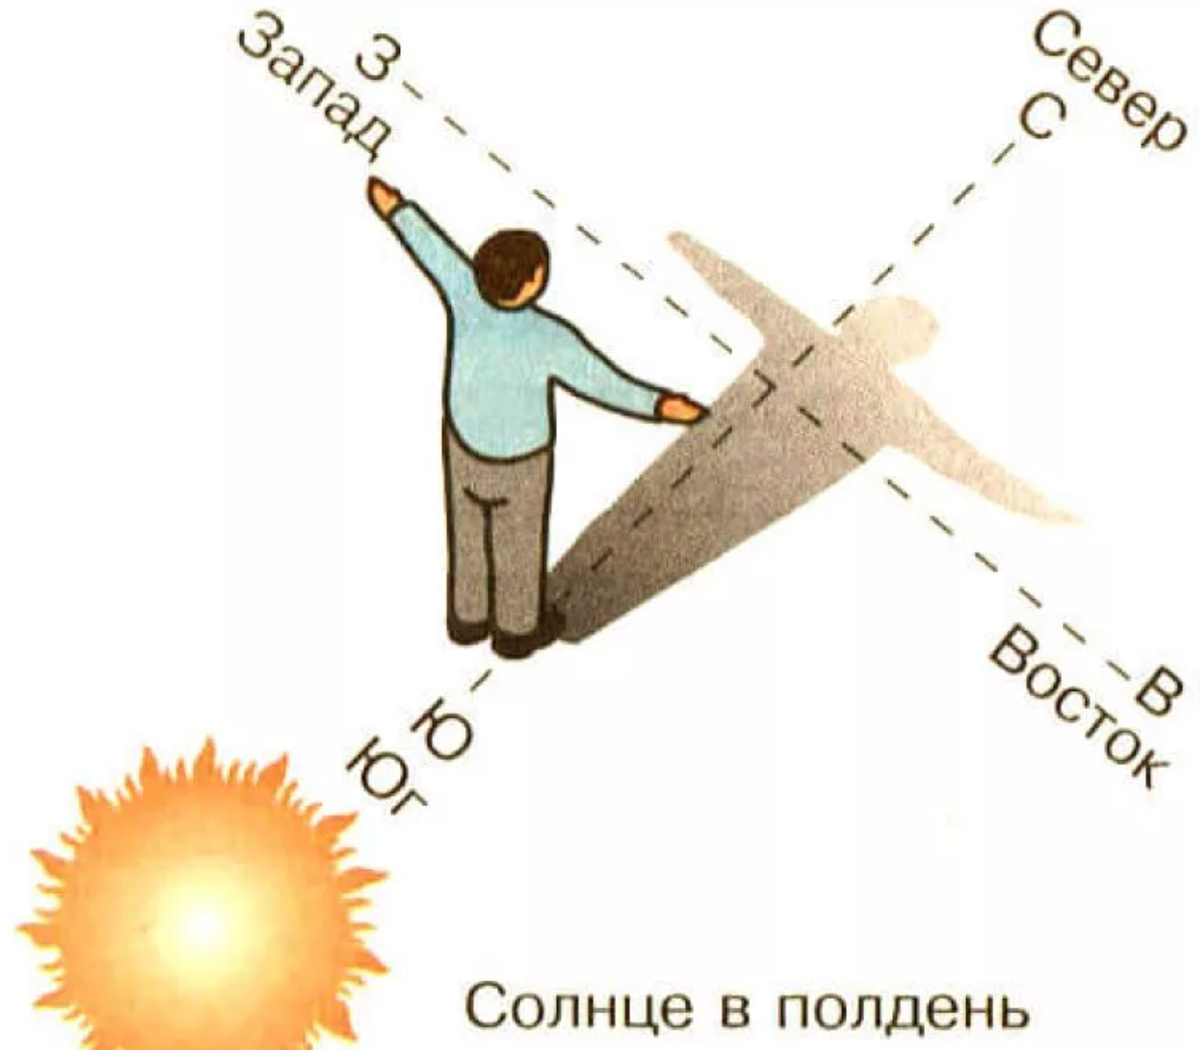 Место где встает солнце. Ориентирование на местности по солнцу. Как определить стороны света по солнцу. Как ориентироваться по солнцу картинки. Как ориентироваться по солнцу в полдень.